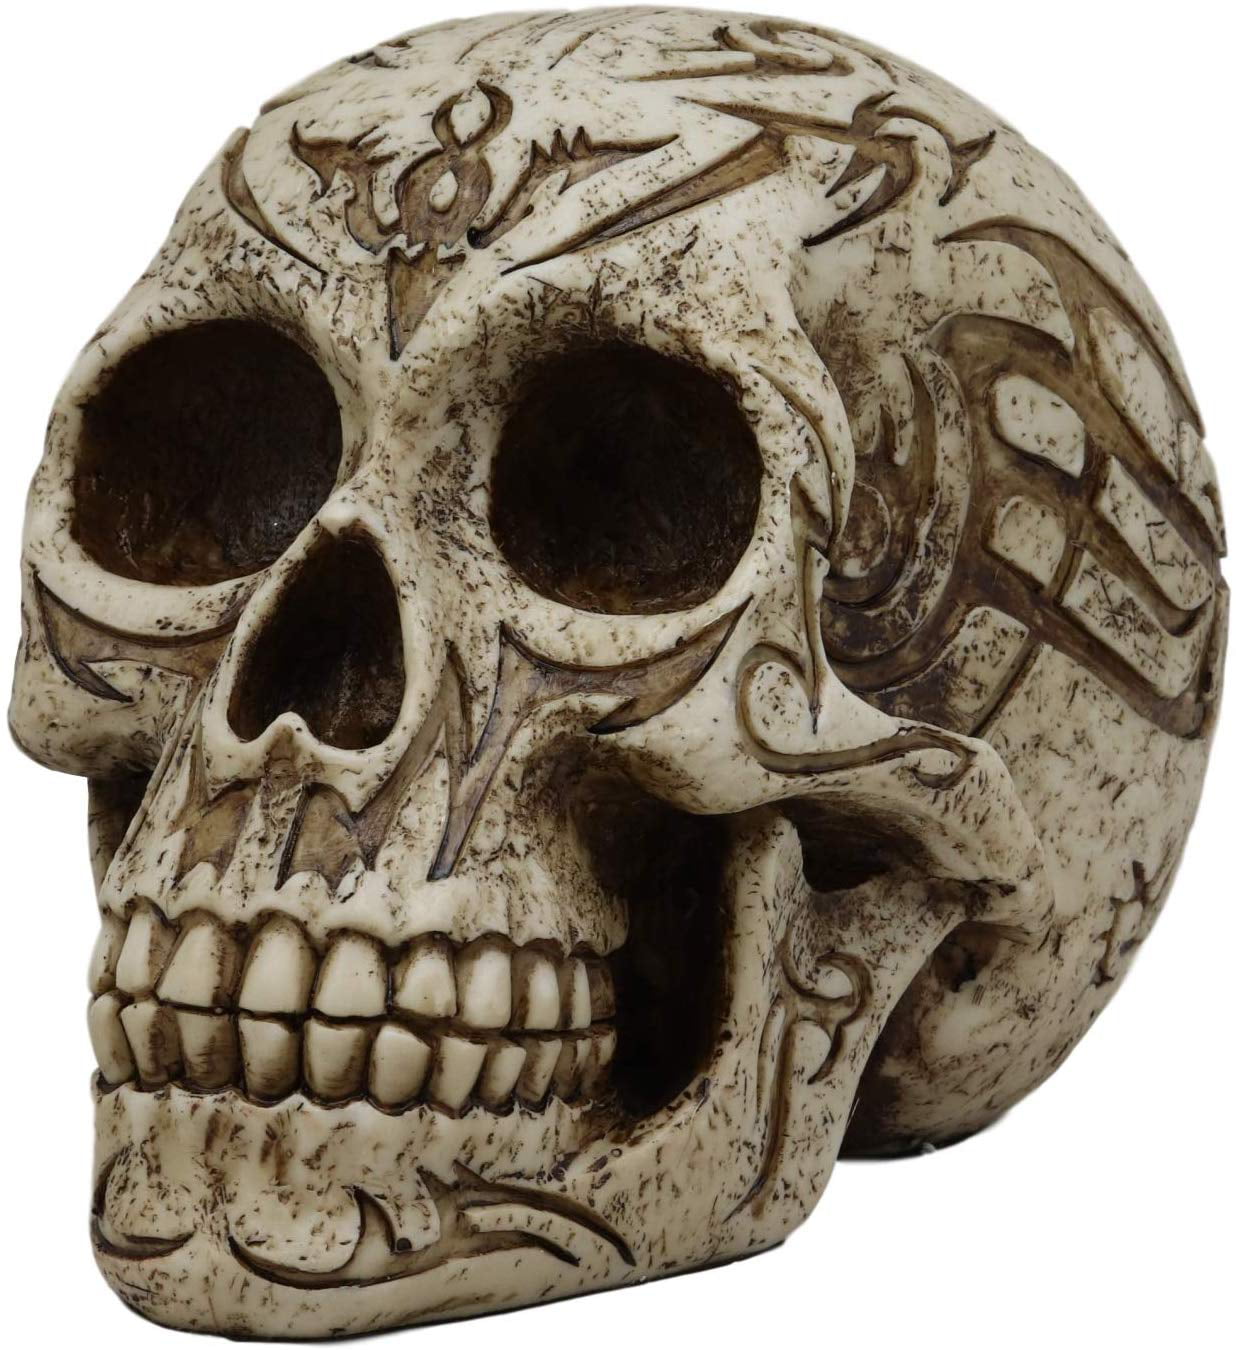 NEW 7 Inch Spirit Skull Skeleton Figurine Desk Halloween Open Top Box Gift 8090 